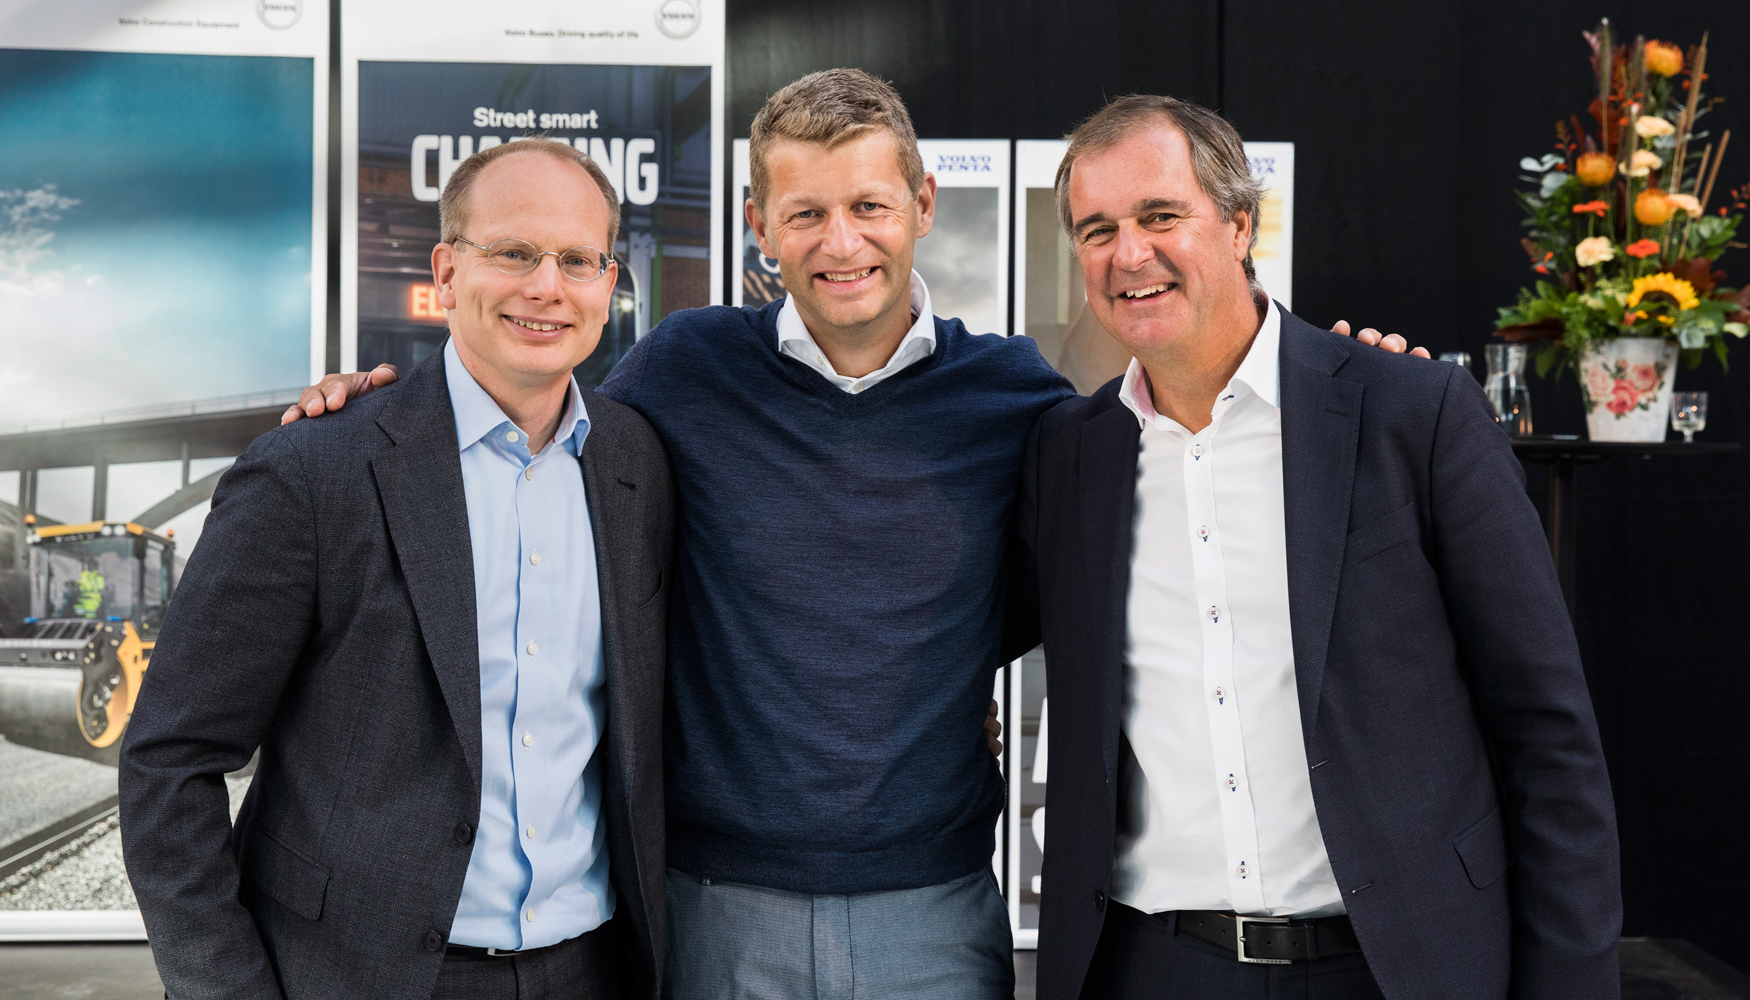 Hkan Agnevall, presidente de Volvo Buses, Melker Jernberg, presidente de Volvo CE, y Bjrn Ingemanson, presidente de Volvo Penta...